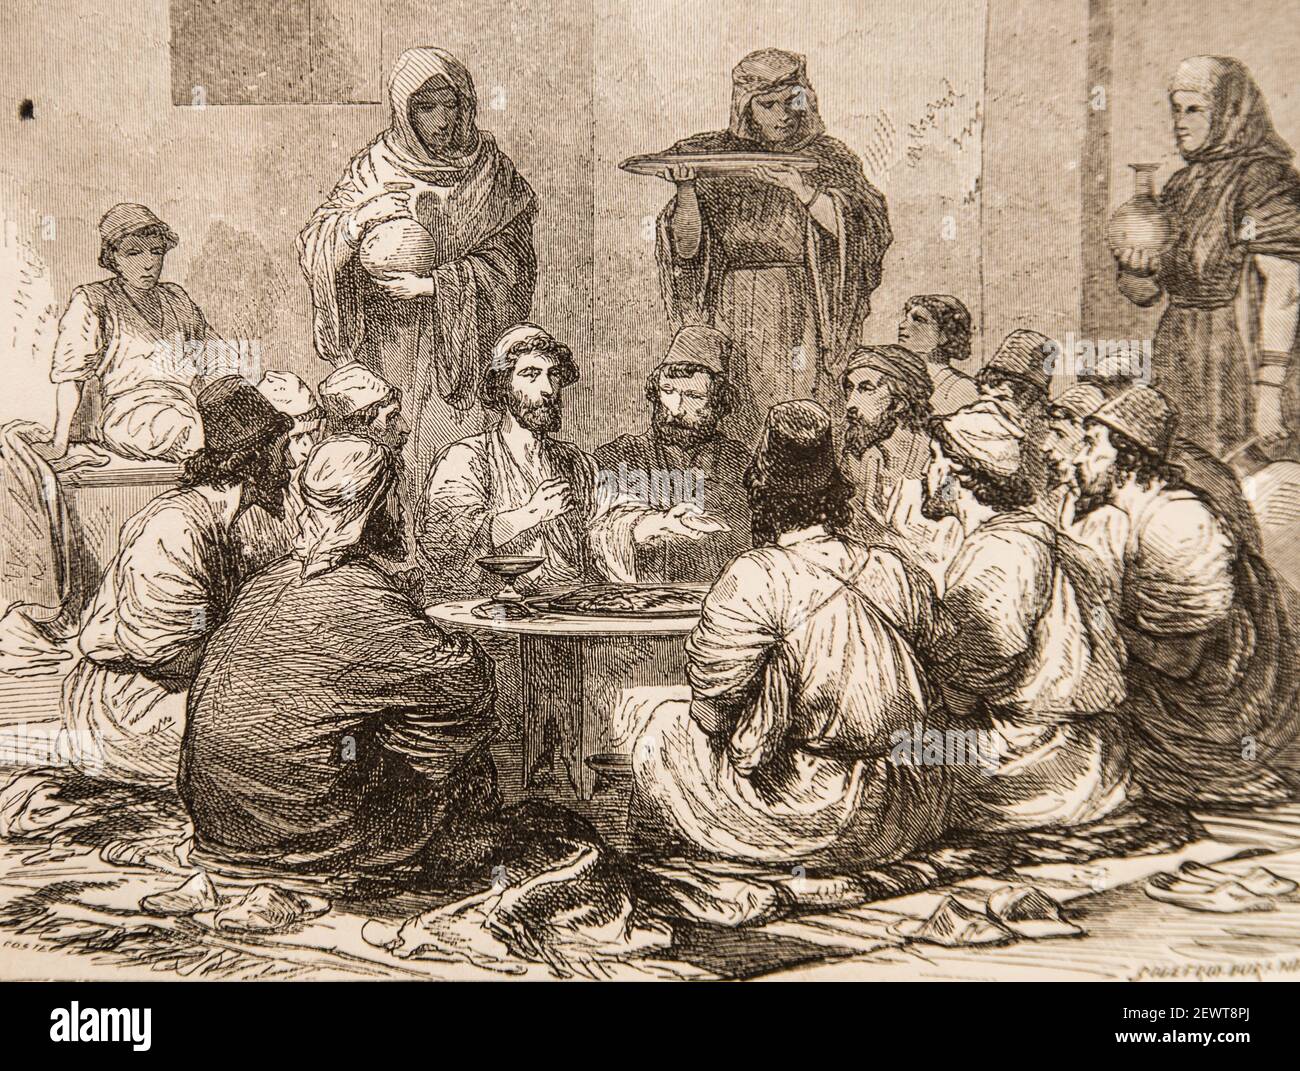 A table,montrant l'aliment,il disait: Me voici, vie de jesus par ernest renan ,dessins de godefroy durand,editeur michel Levy 1870 Stockfoto